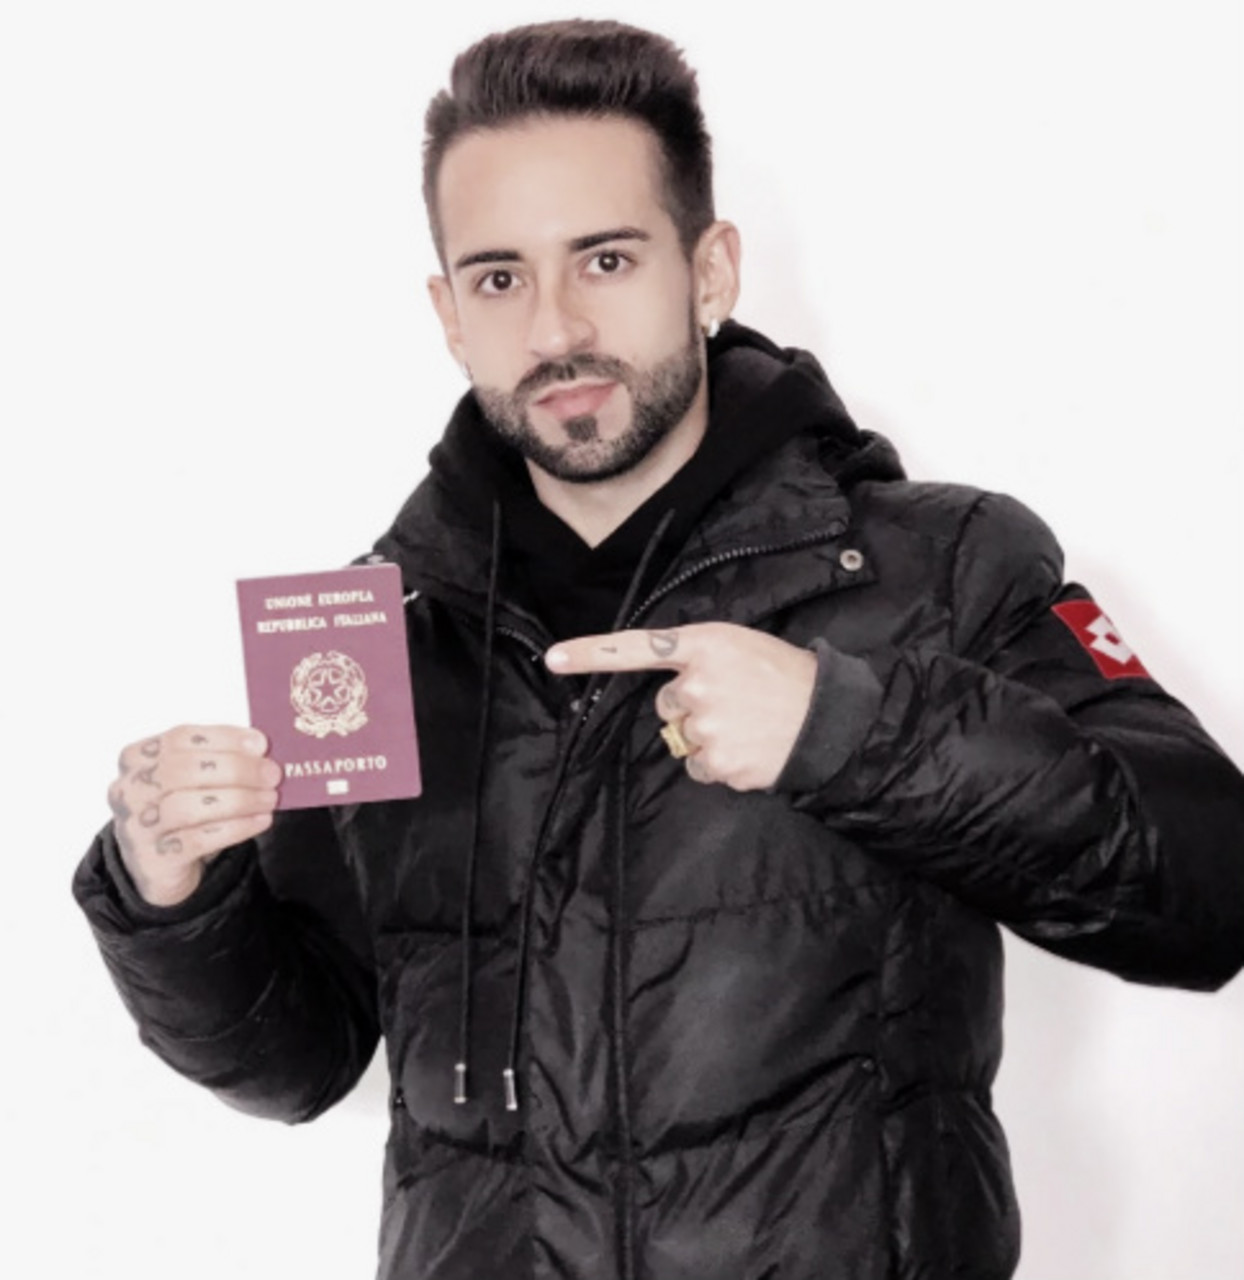 Com dupla cidadania, Ricardinho adquire passaporte italiano